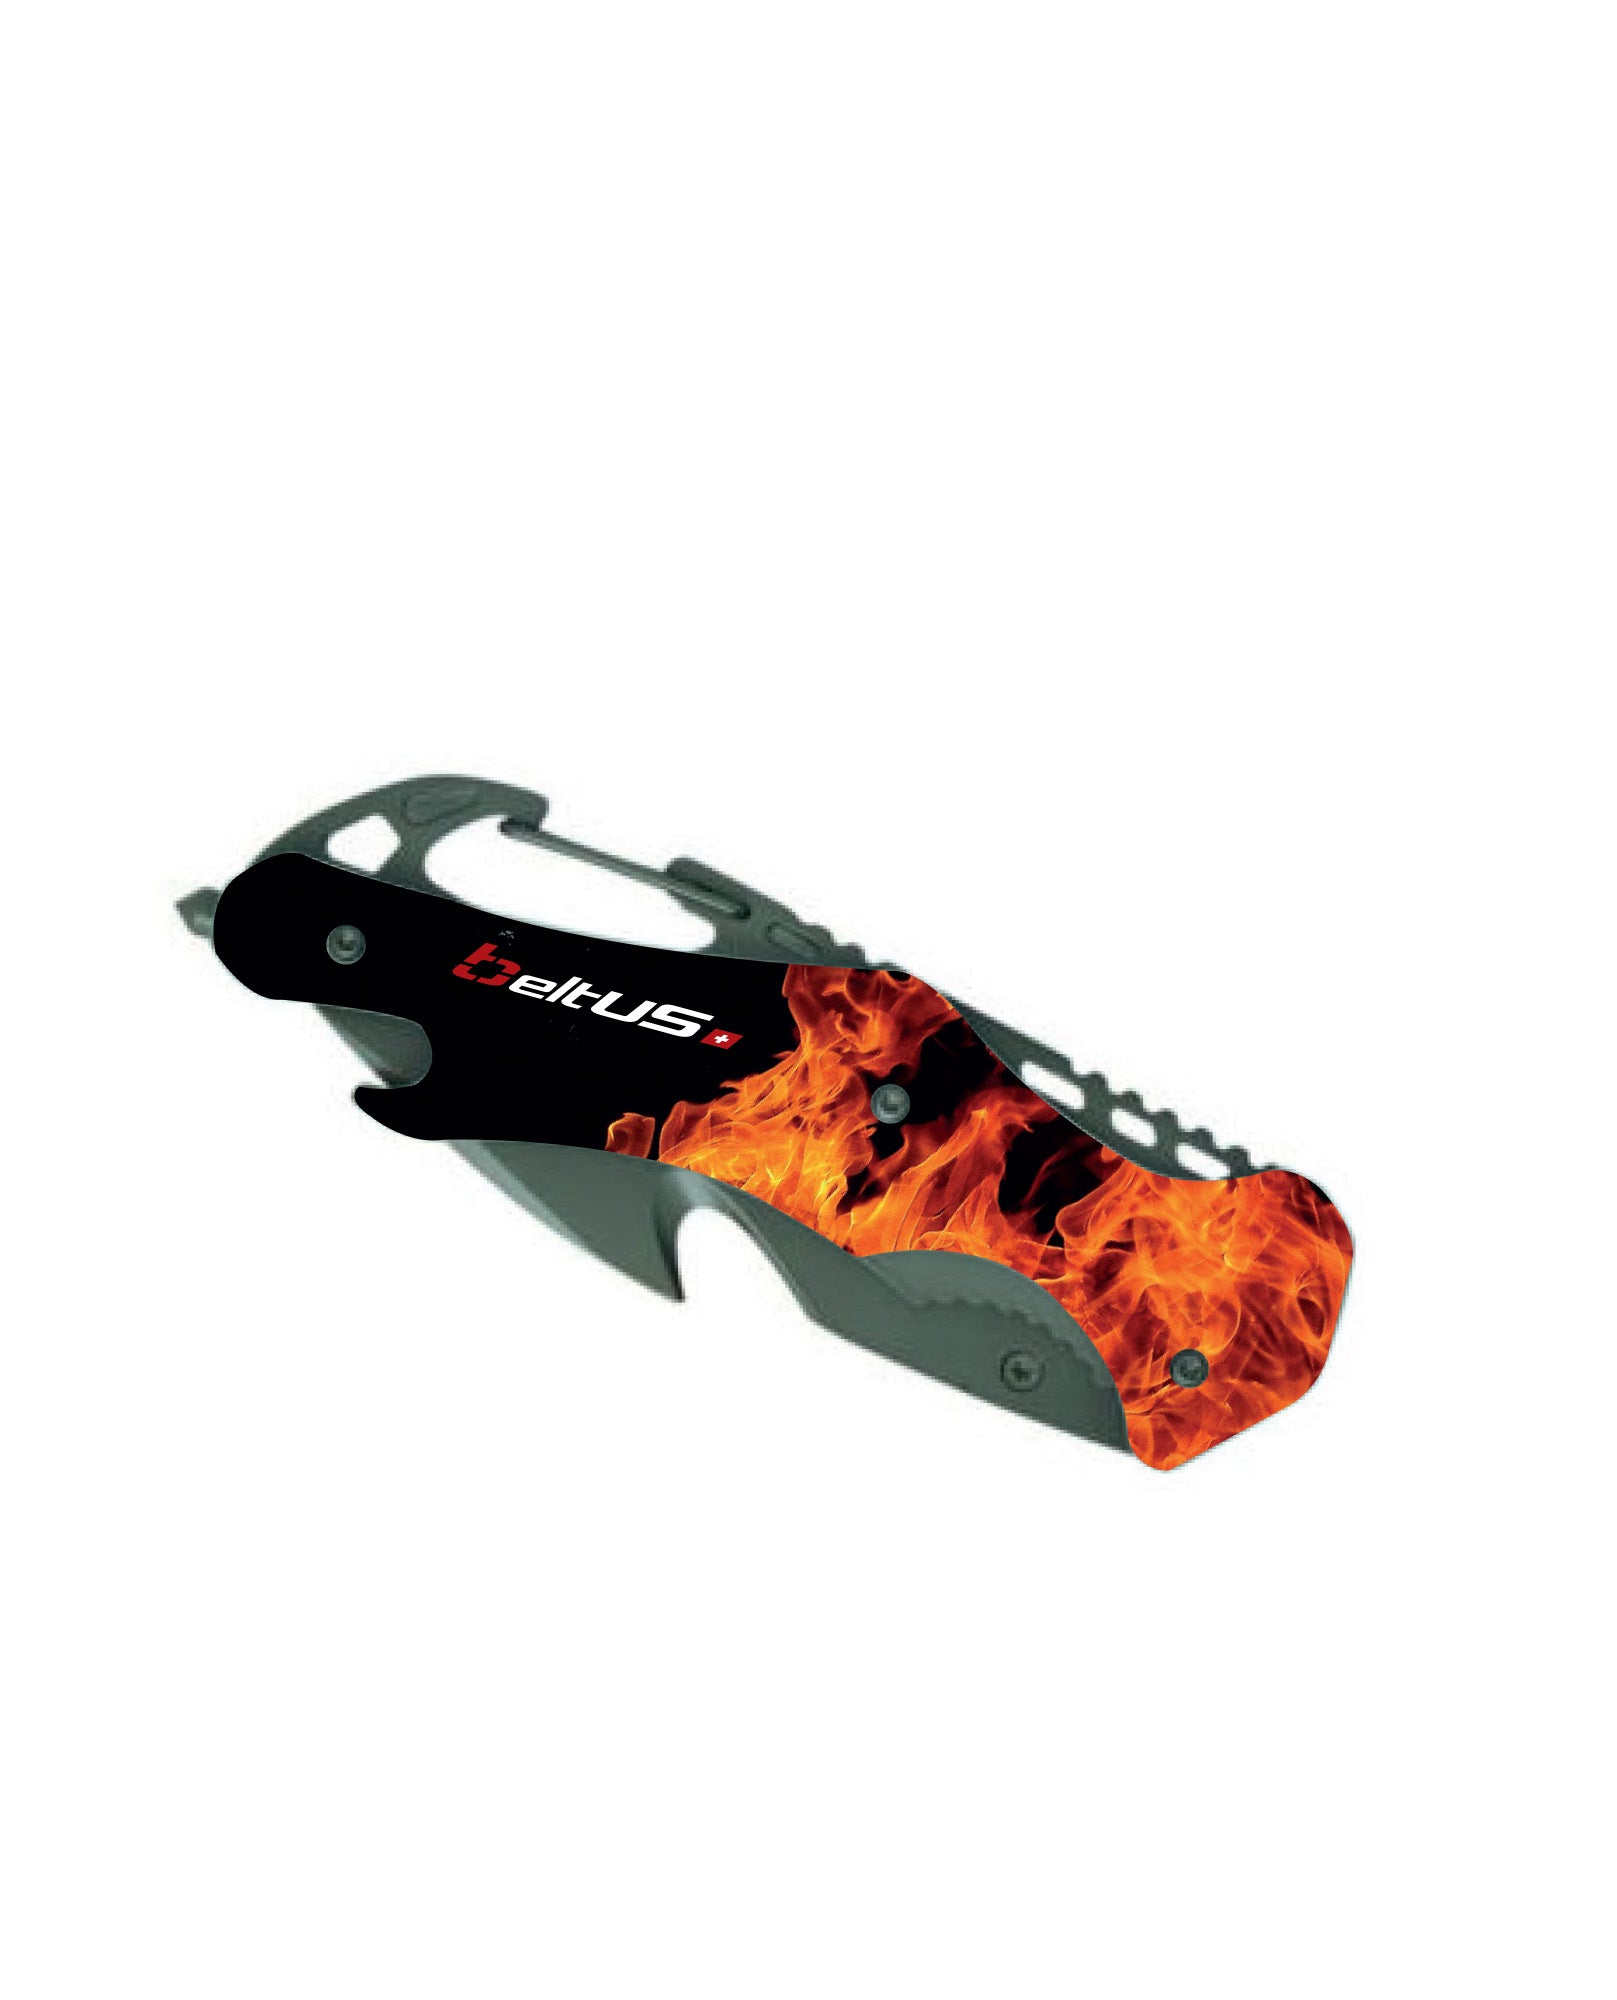 Safety knife - 6001